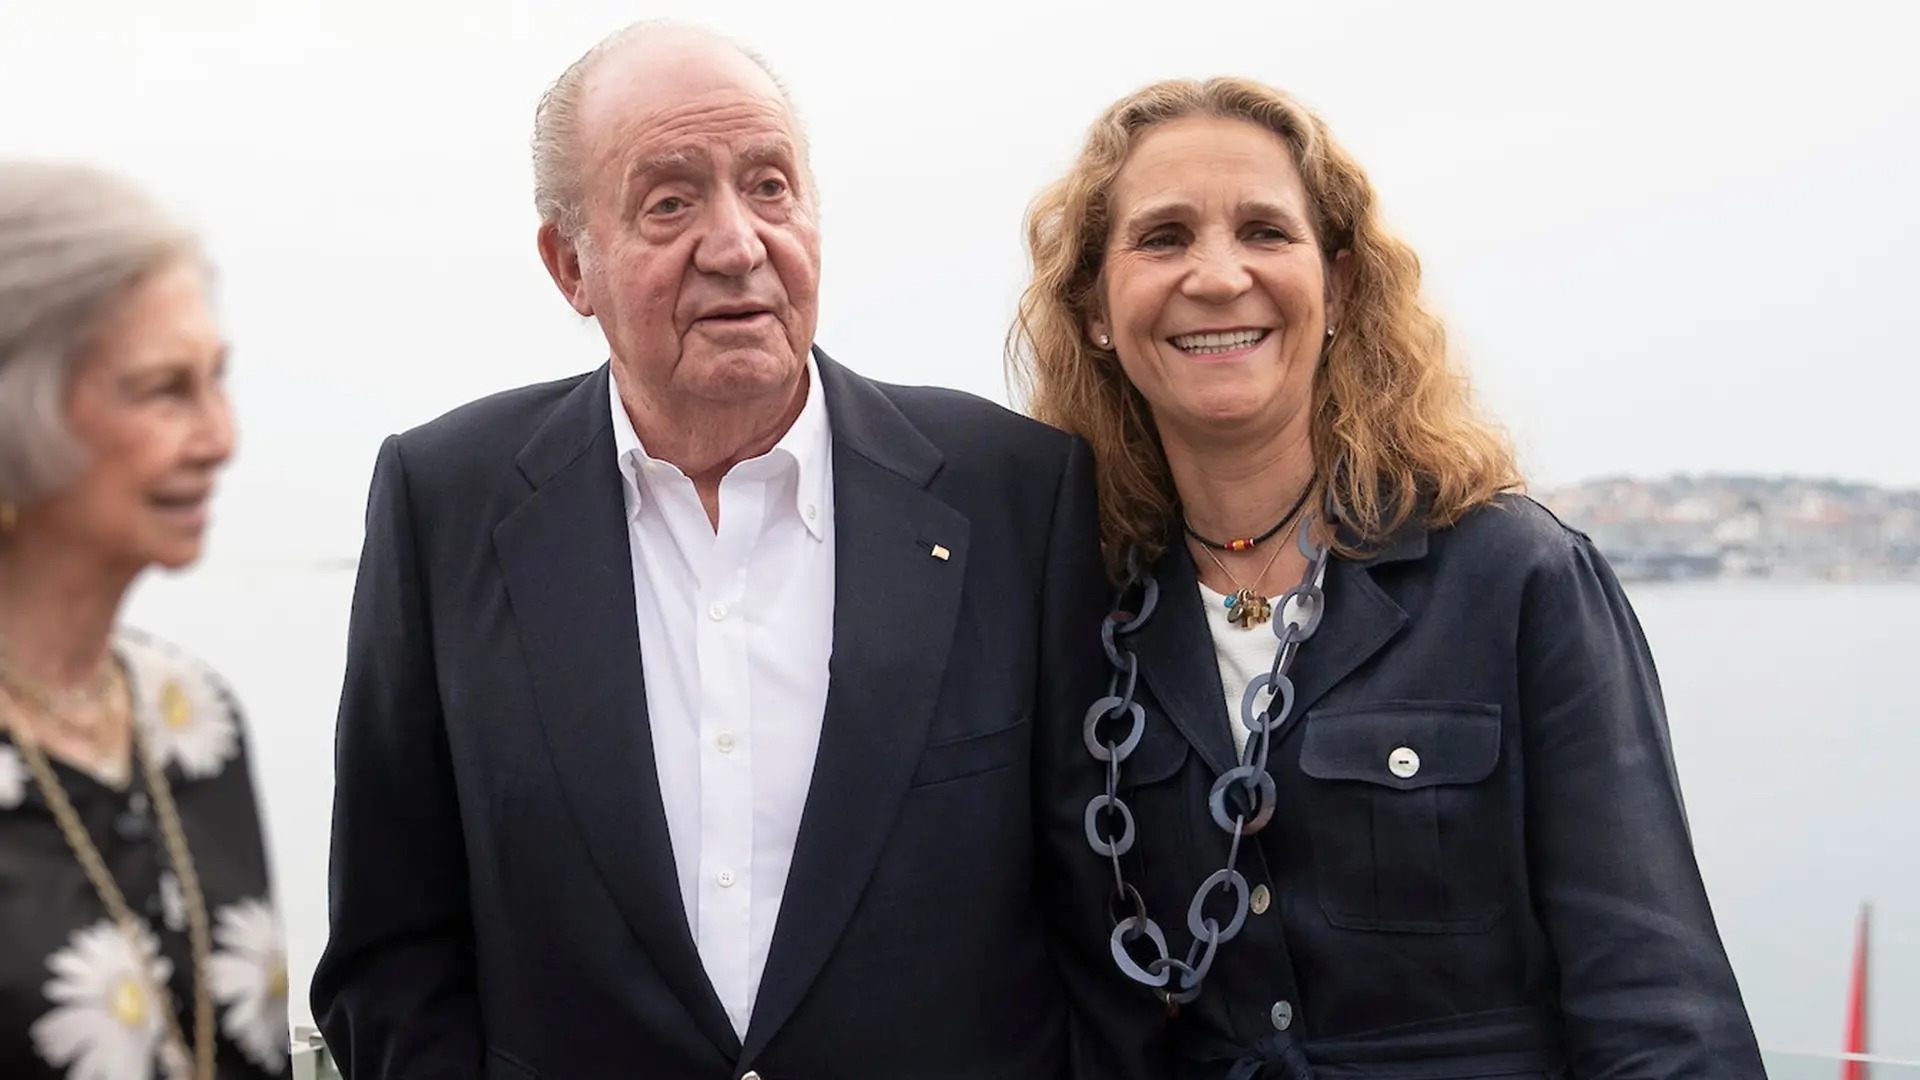 Joan Carles I arriba a Madrid amb un regal de 800.000 euros per a la infanta Elena